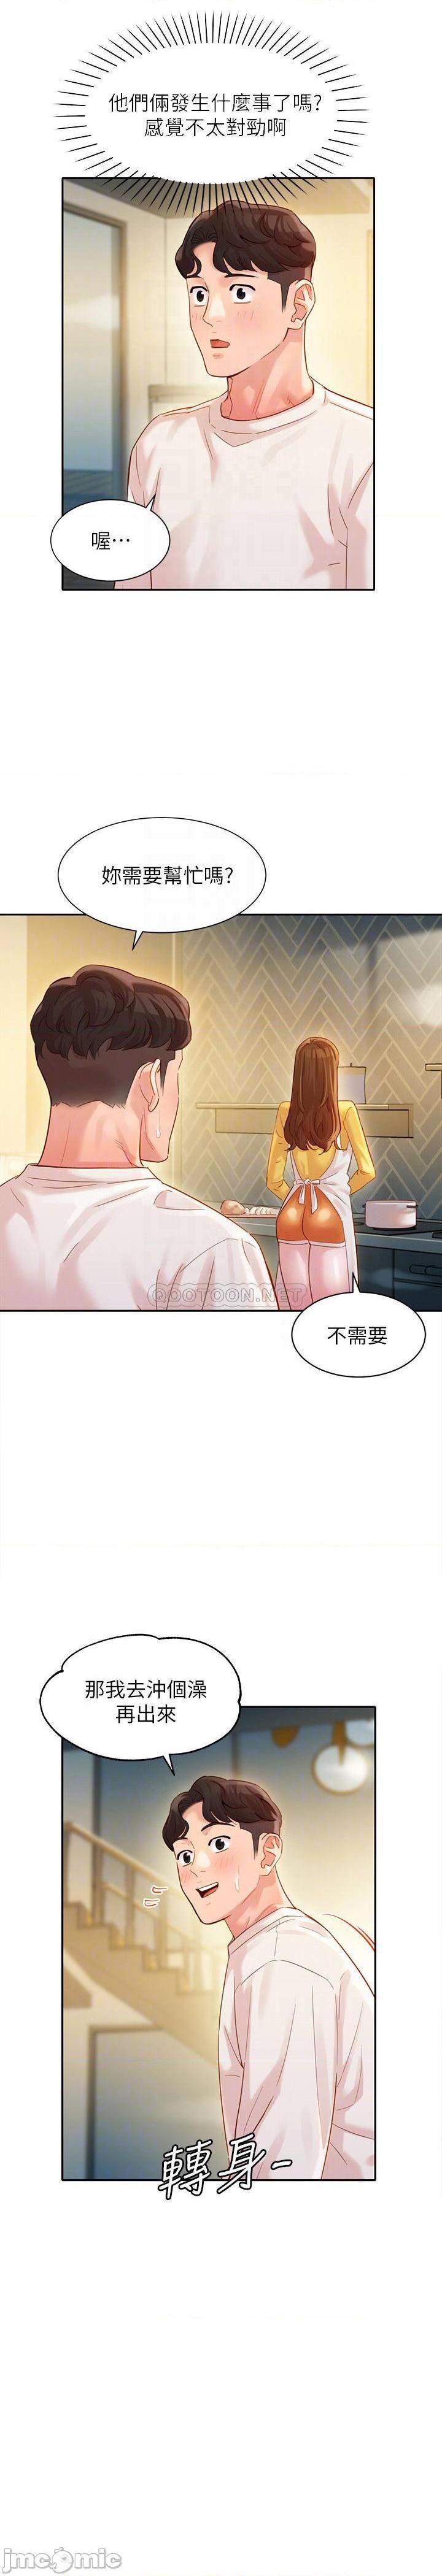 《女神写真》漫画 第26话 - 难道心颖跟汉杰在浴室里…?